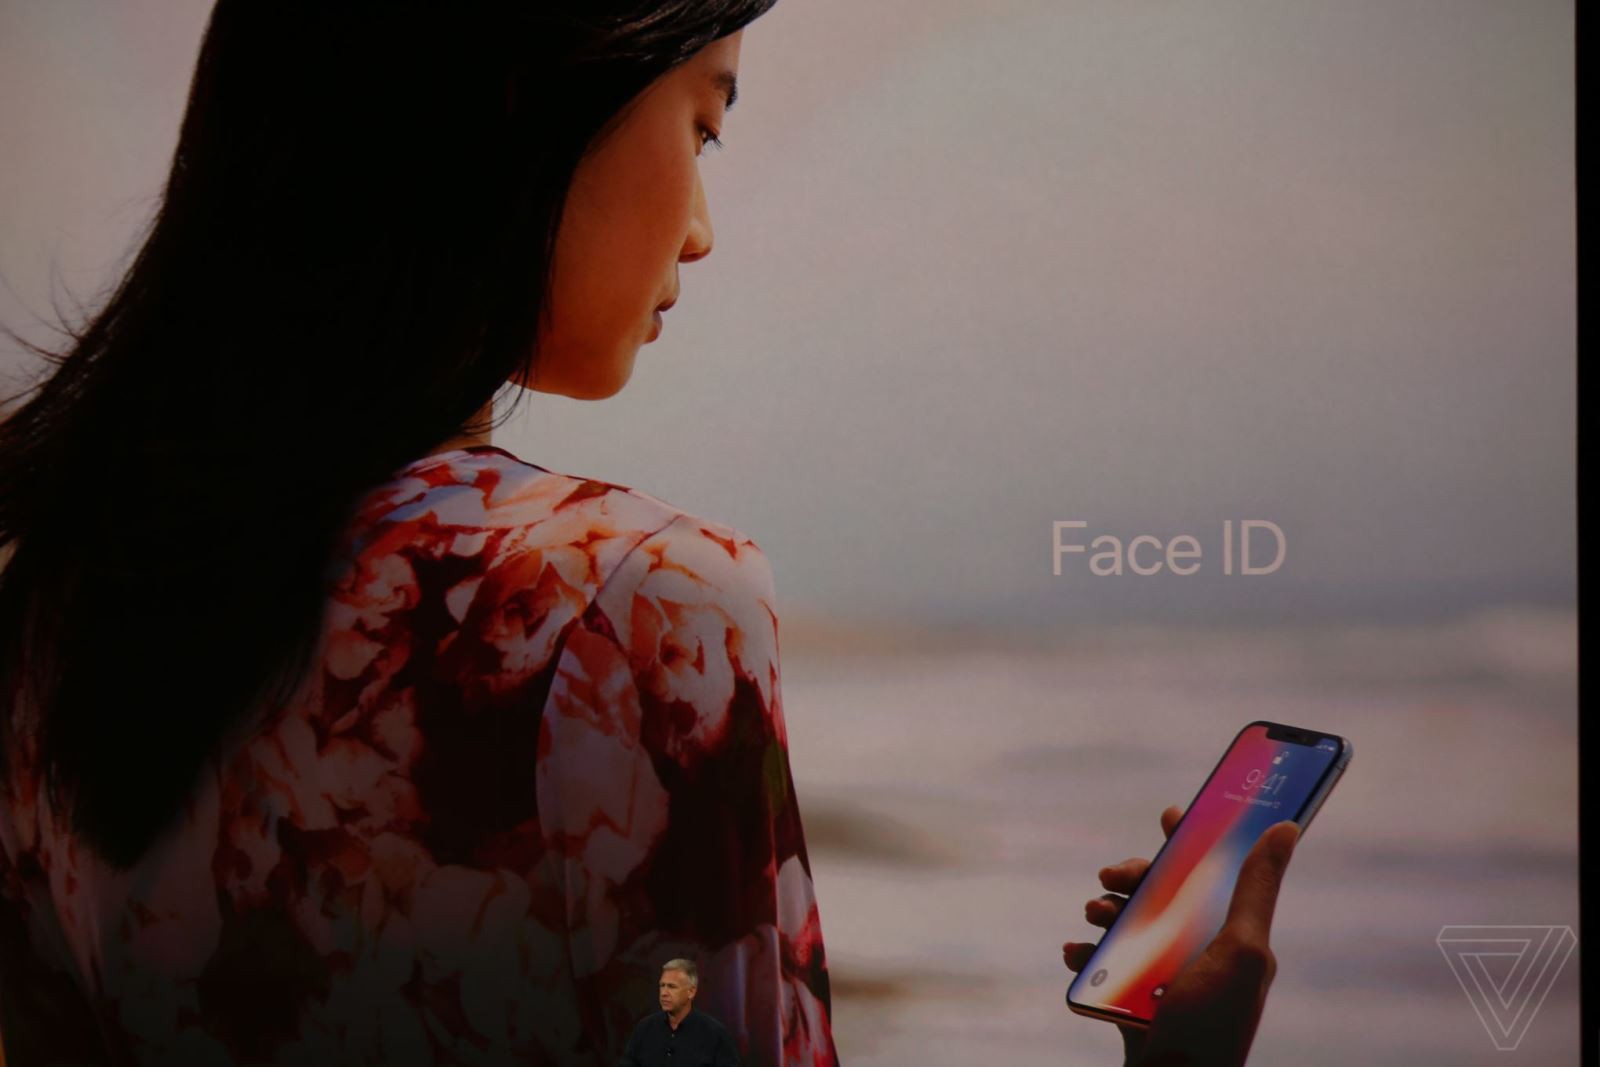 Công nghệ mới Face ID – công nghệ bảo mật mới…